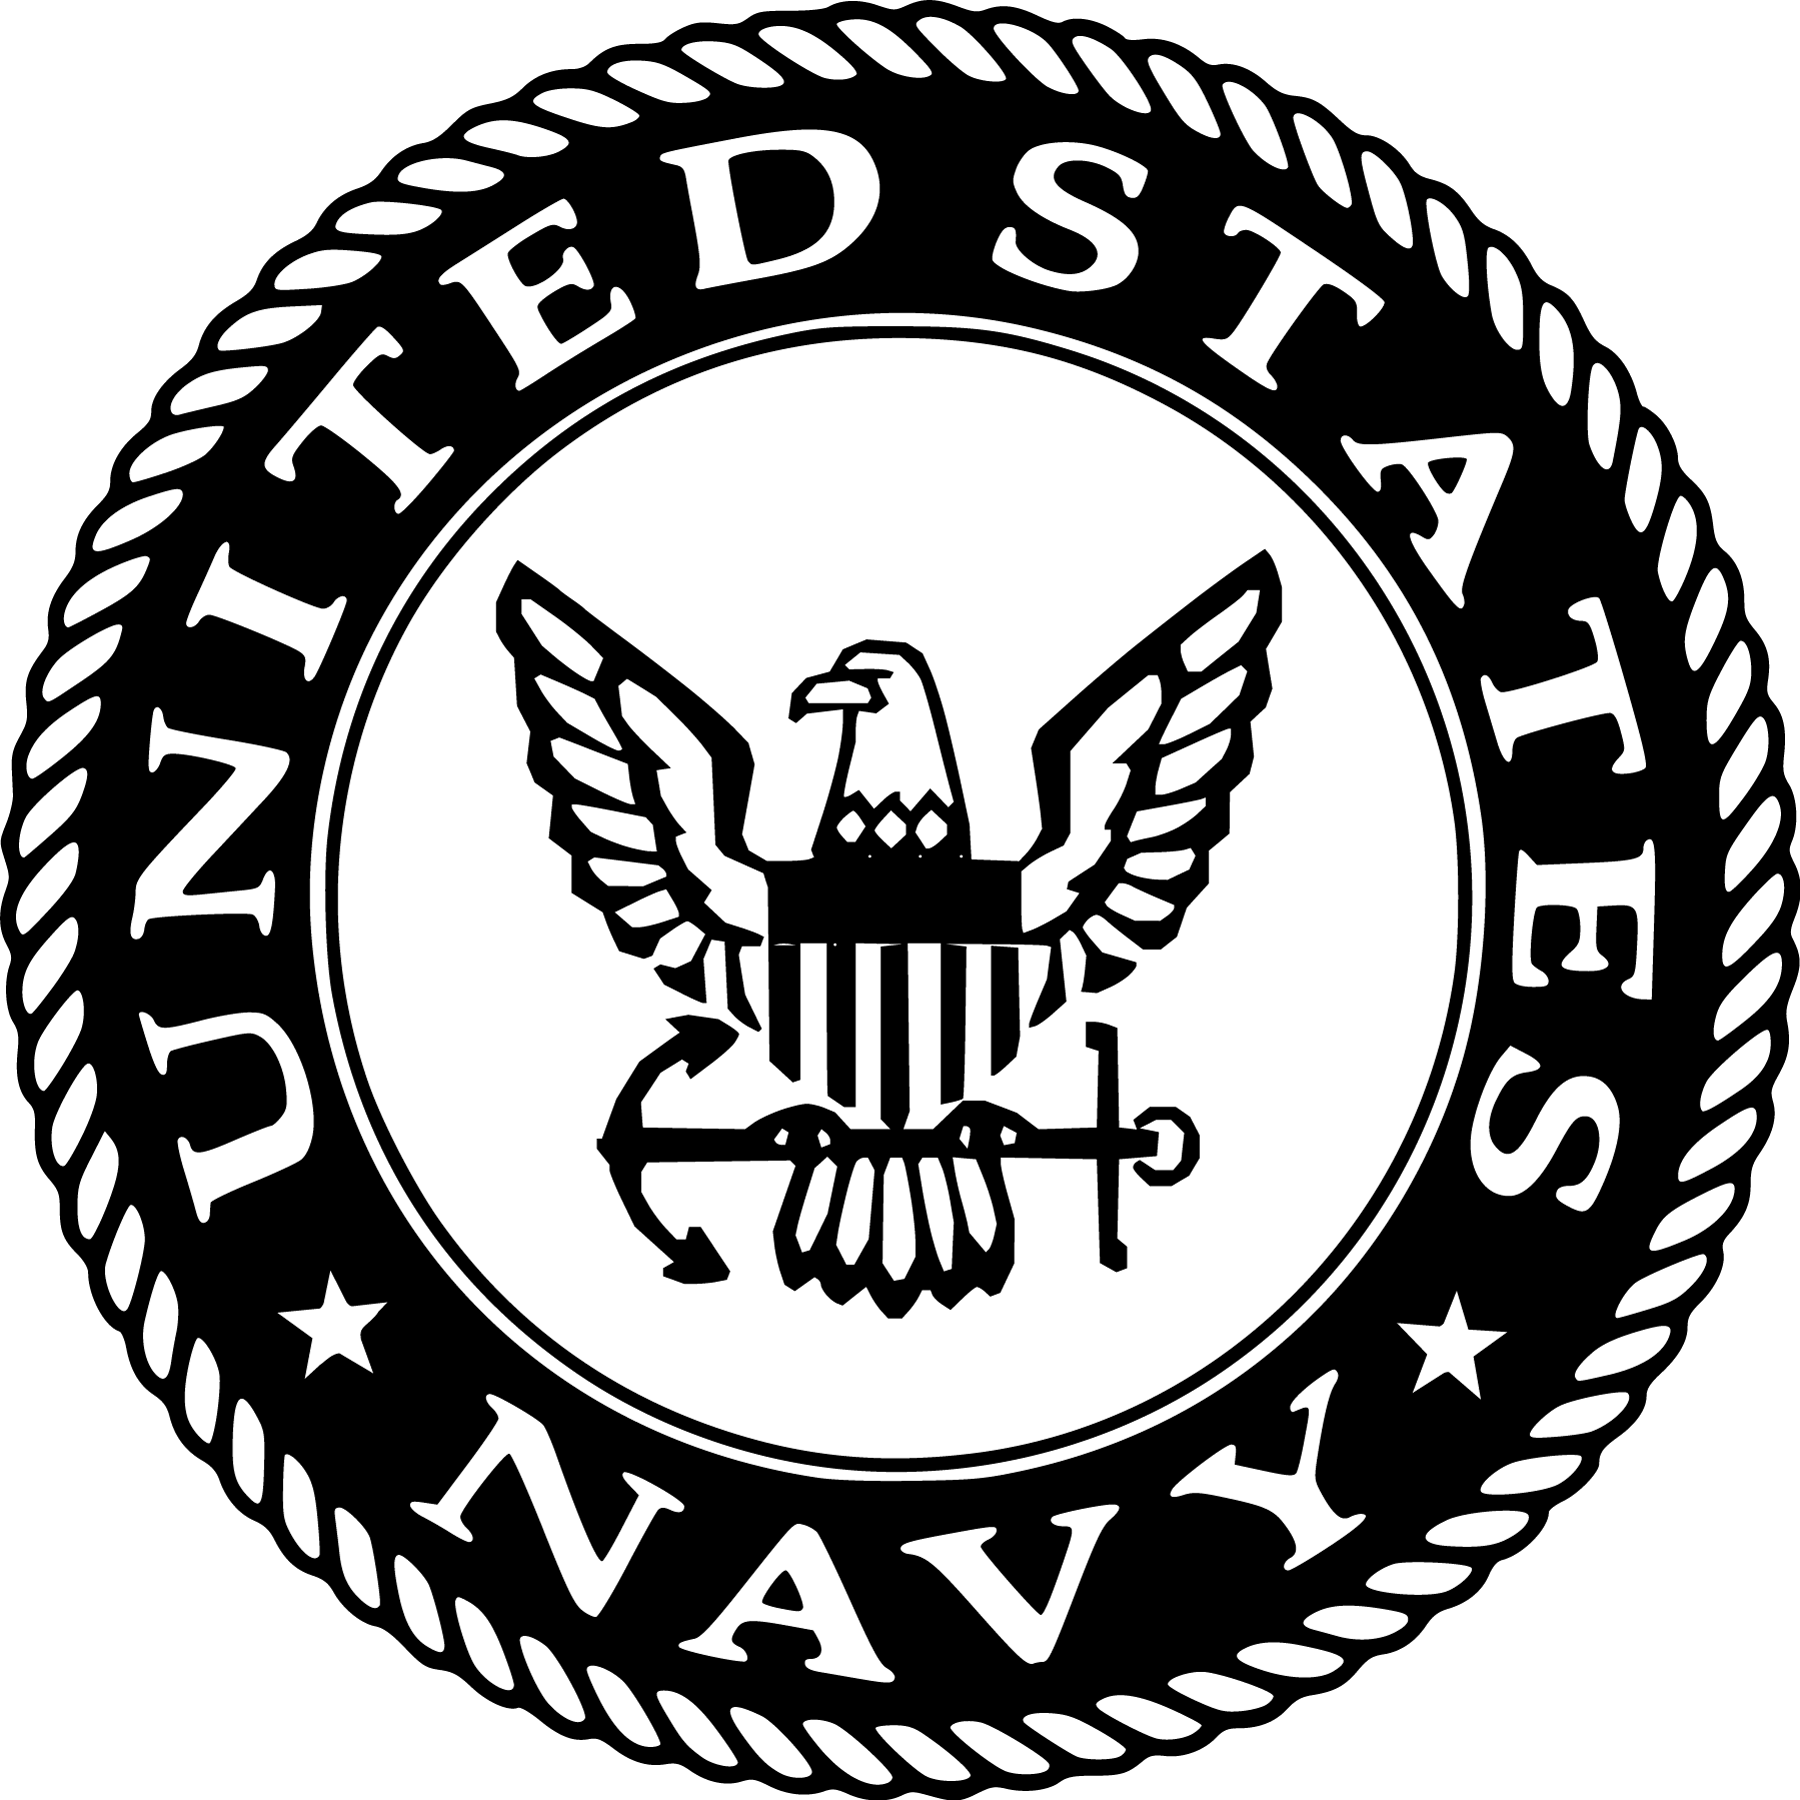 US Navy Logo - United States Navy Logo | Logos | Navy, Military, Us navy